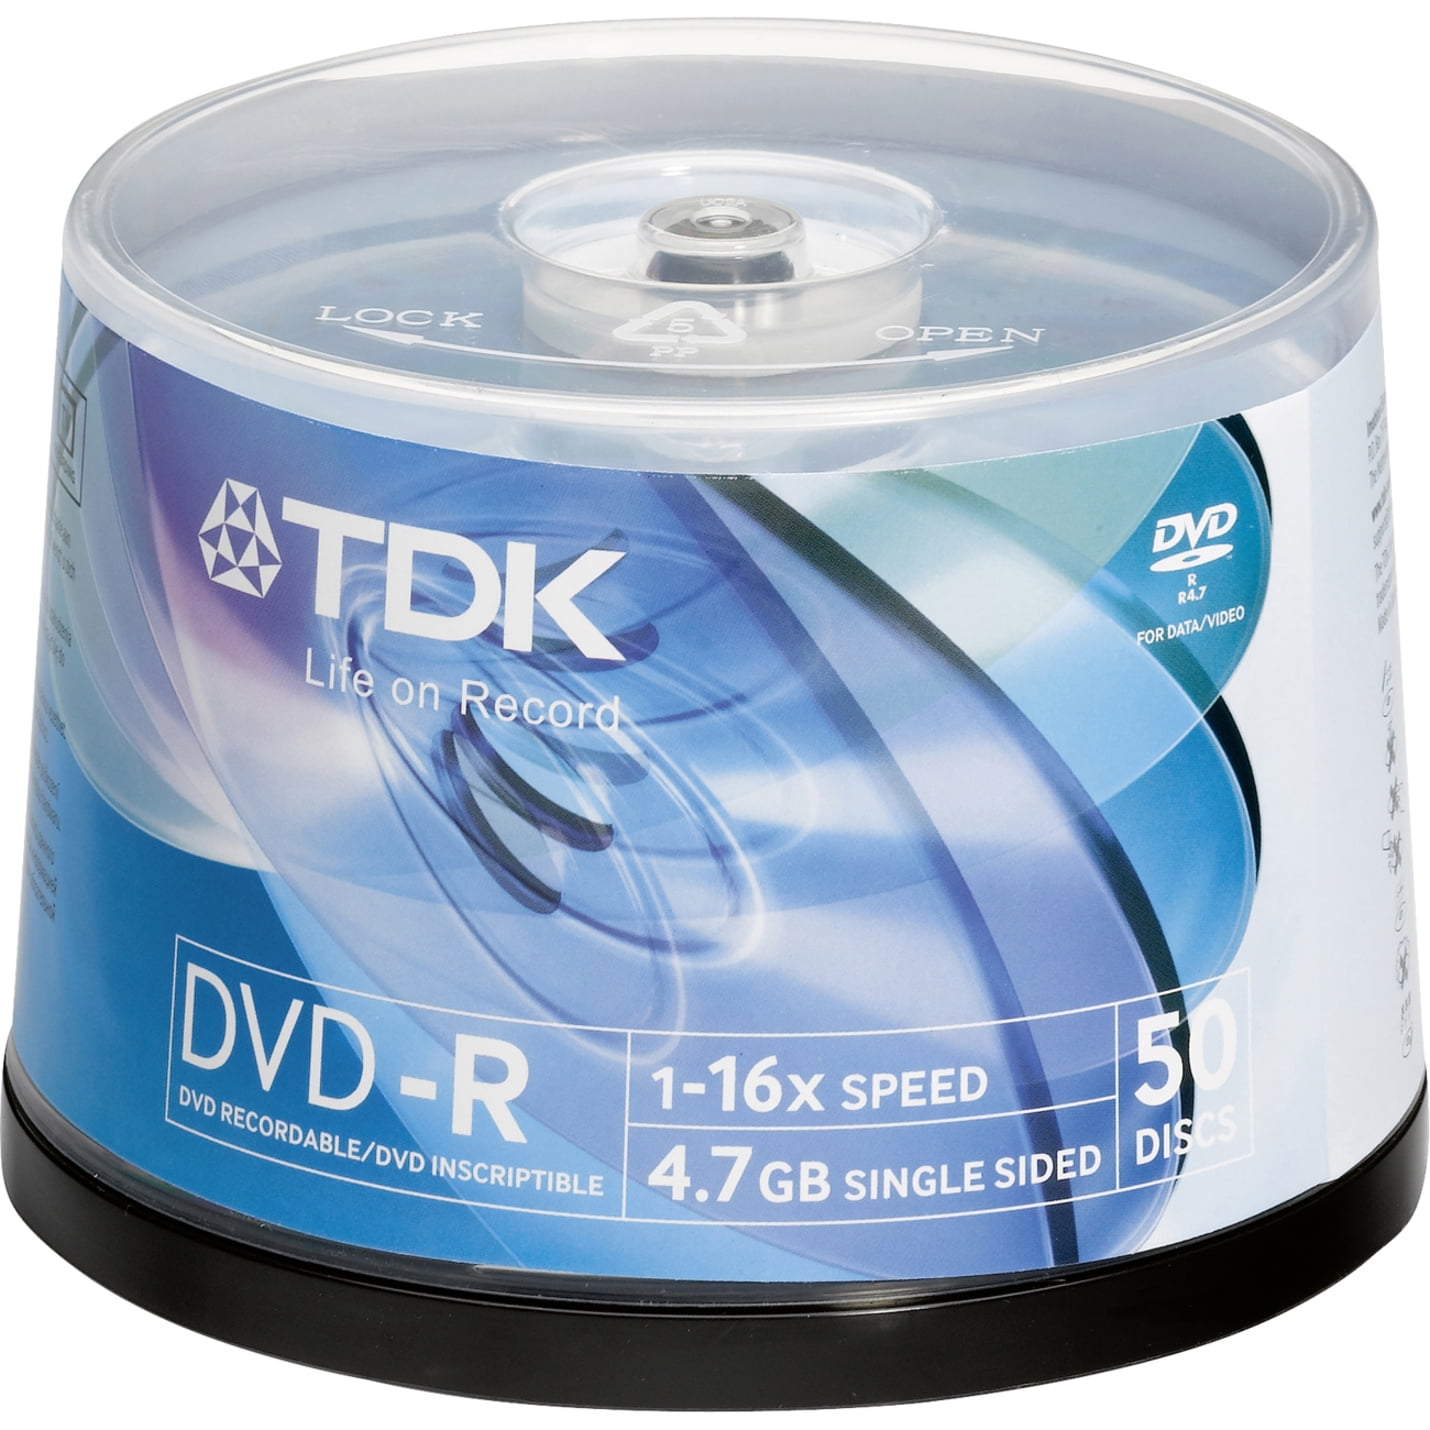 CheckOutStore (50) Premium 16x DVD-R 4.7GB in Tape Wrap (White